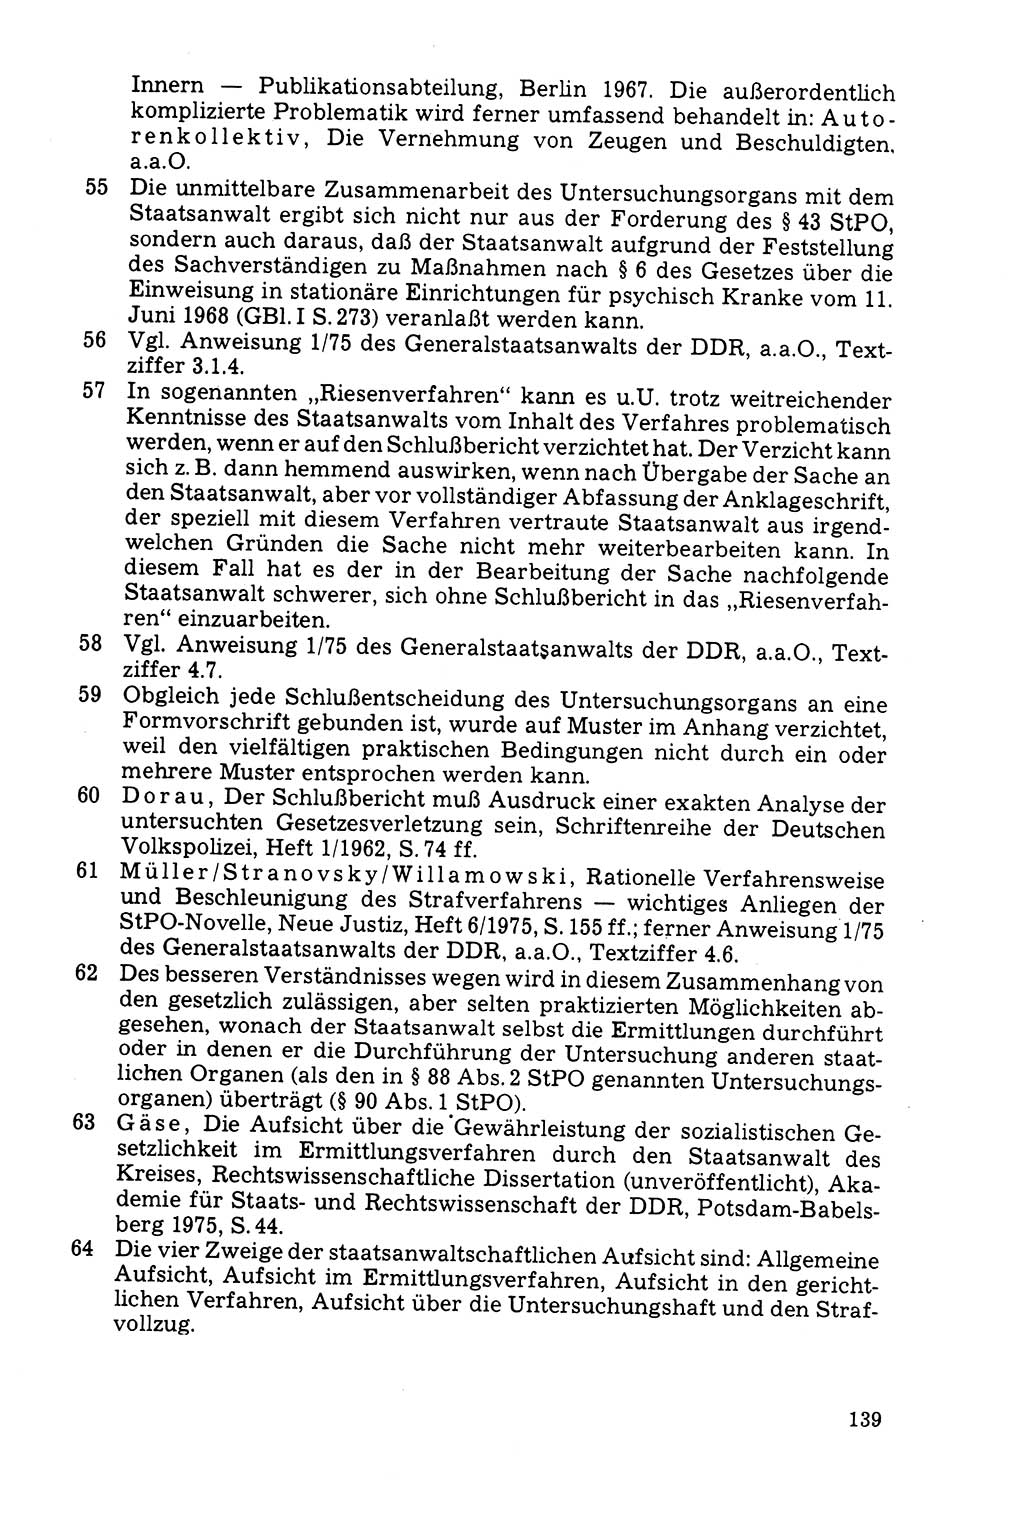 Der Abschluß des Ermittlungsverfahrens [Deutsche Demokratische Republik (DDR)] 1978, Seite 139 (Abschl. EV DDR 1978, S. 139)